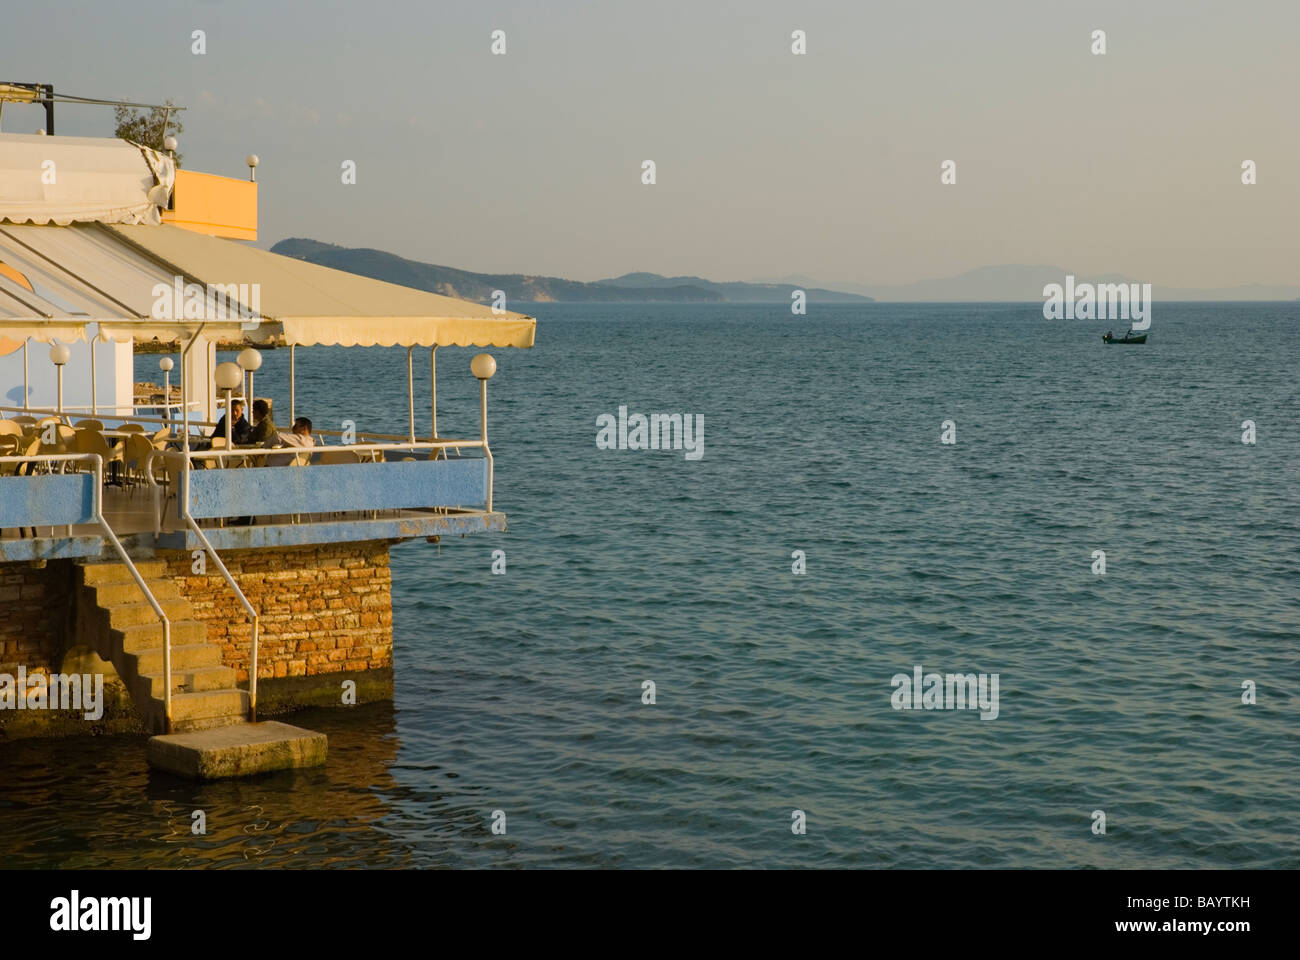 Seaside restaurant terrace in Saranda Albania Europe Stock Photo